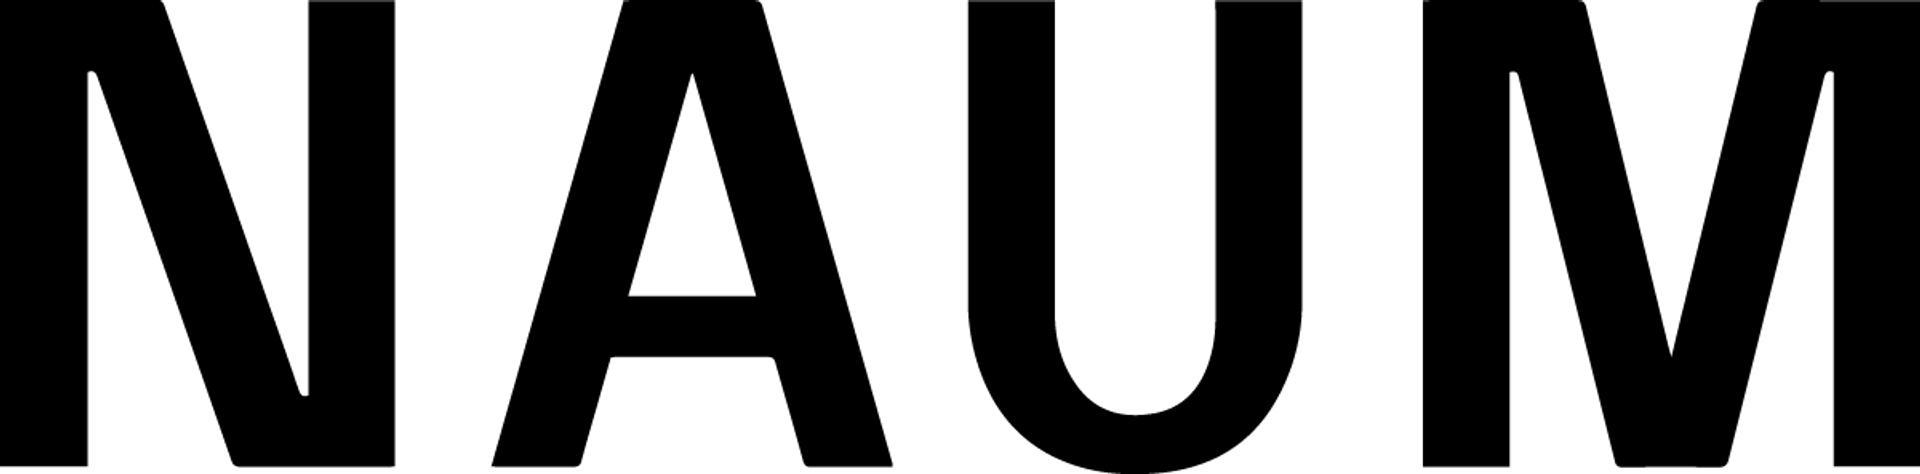 GRACIELA NAUM logo de catálogo